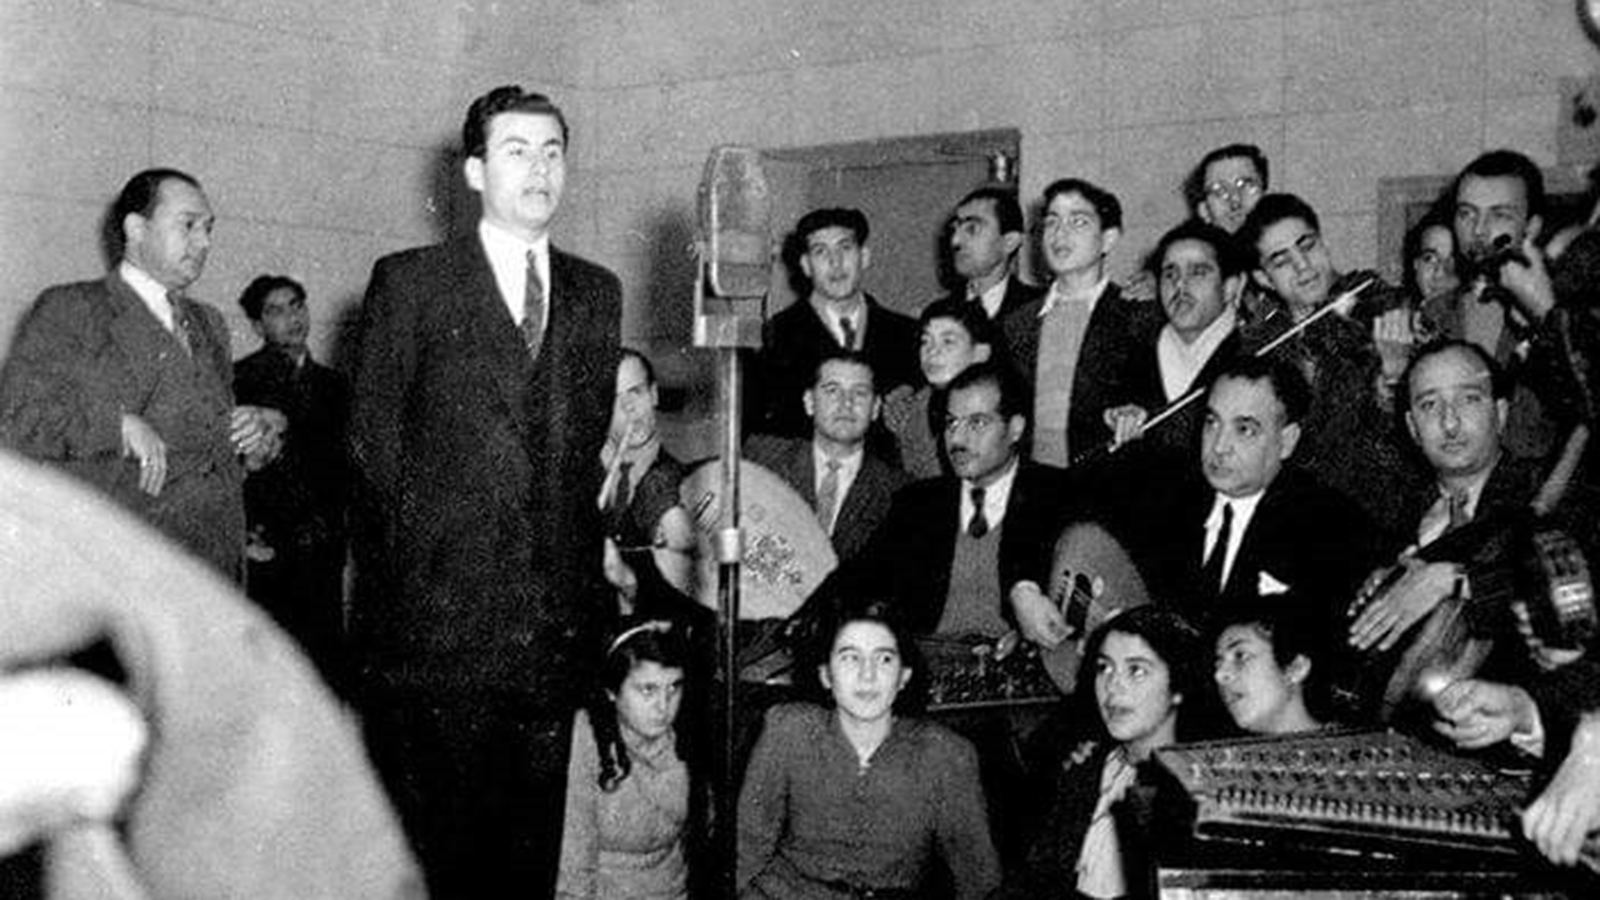 ‪الإذاعة الفلسطينية التي كانت تعتبر ثاني إذاعة في العالم العربي بعد اقتتاح الإذاعة المصرية‬ (مواقع تواصل)